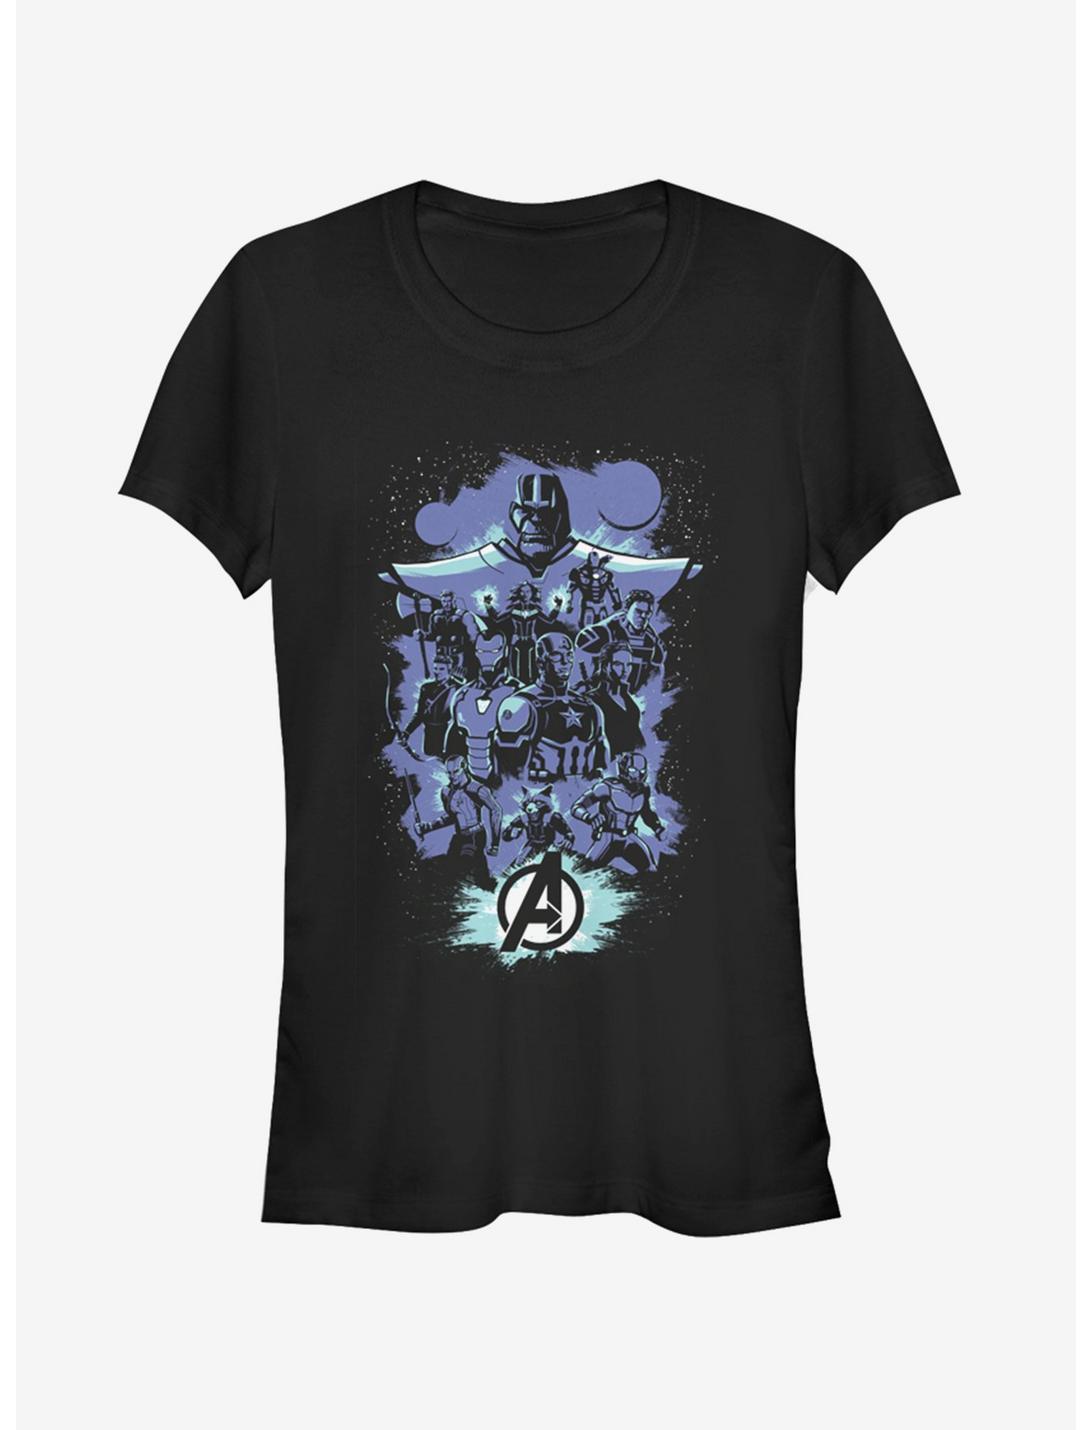 Marvel Avengers: Endgame Pop Art Girls T-Shirt, BLACK, hi-res